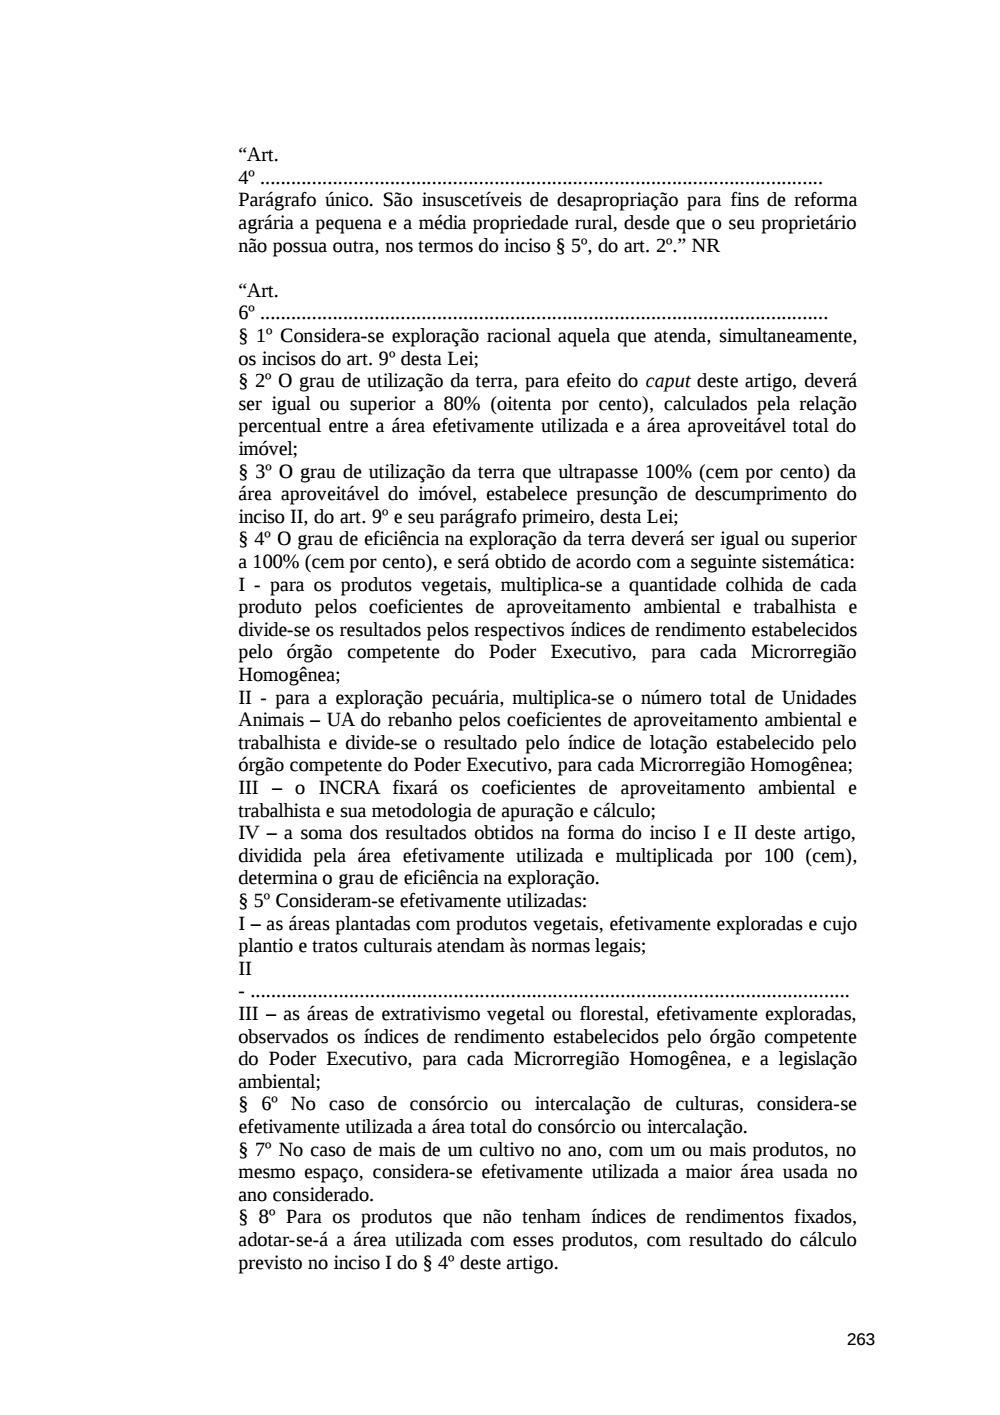 Page 263 from Relatório final da comissão